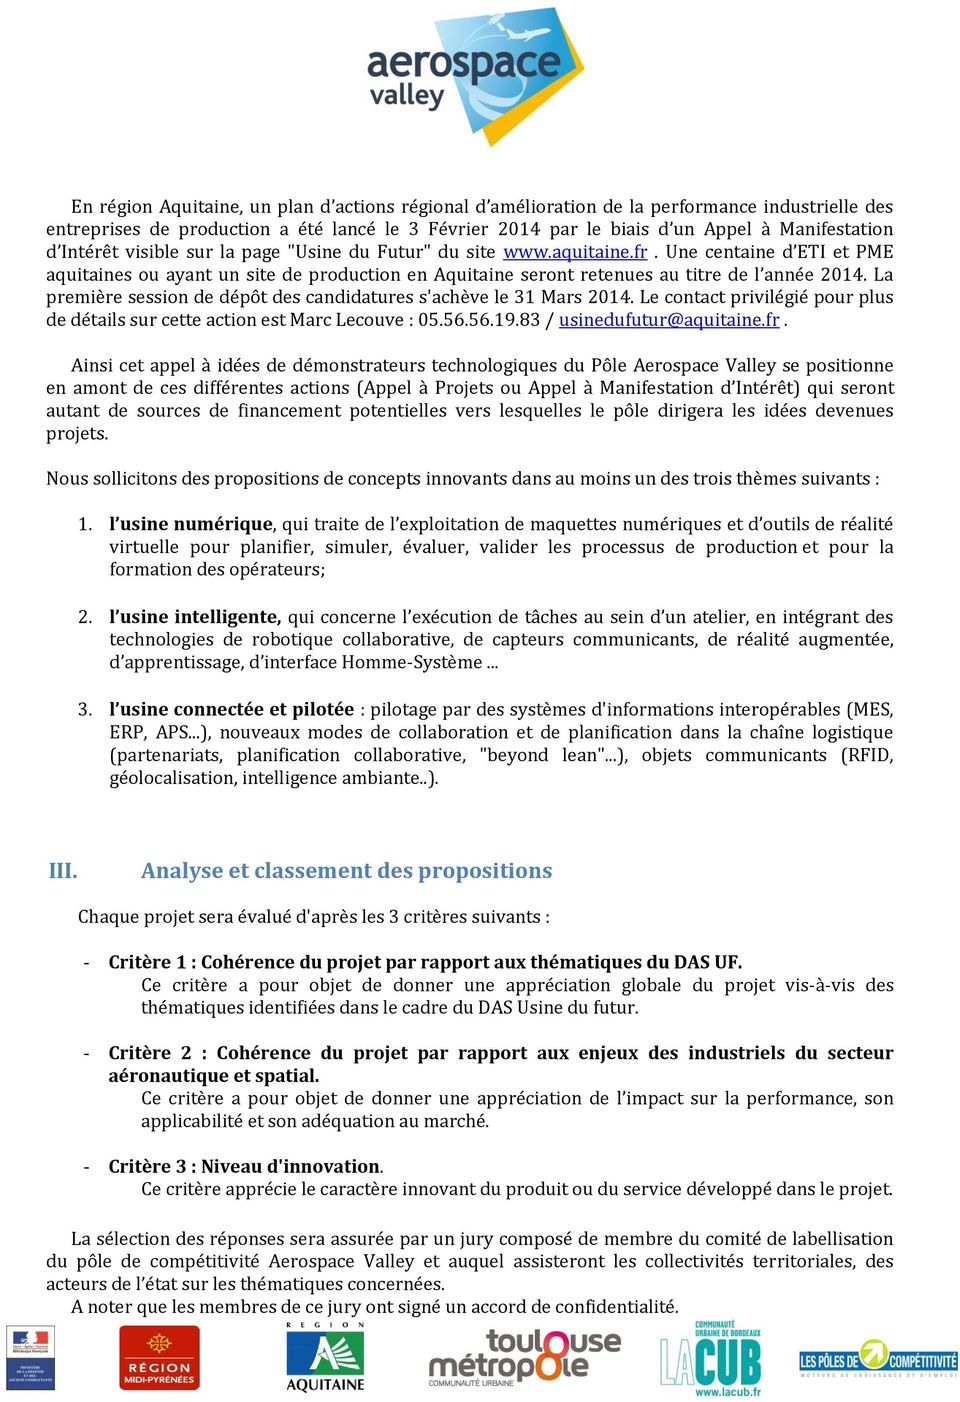 La première session de dépôt des candidatures s'achève le 31 Mars 2014. Le contact privilégié pour plus de détails sur cette action est Marc Lecouve : 05.56.56.19.83 / usinedufutur@aquitaine.fr.